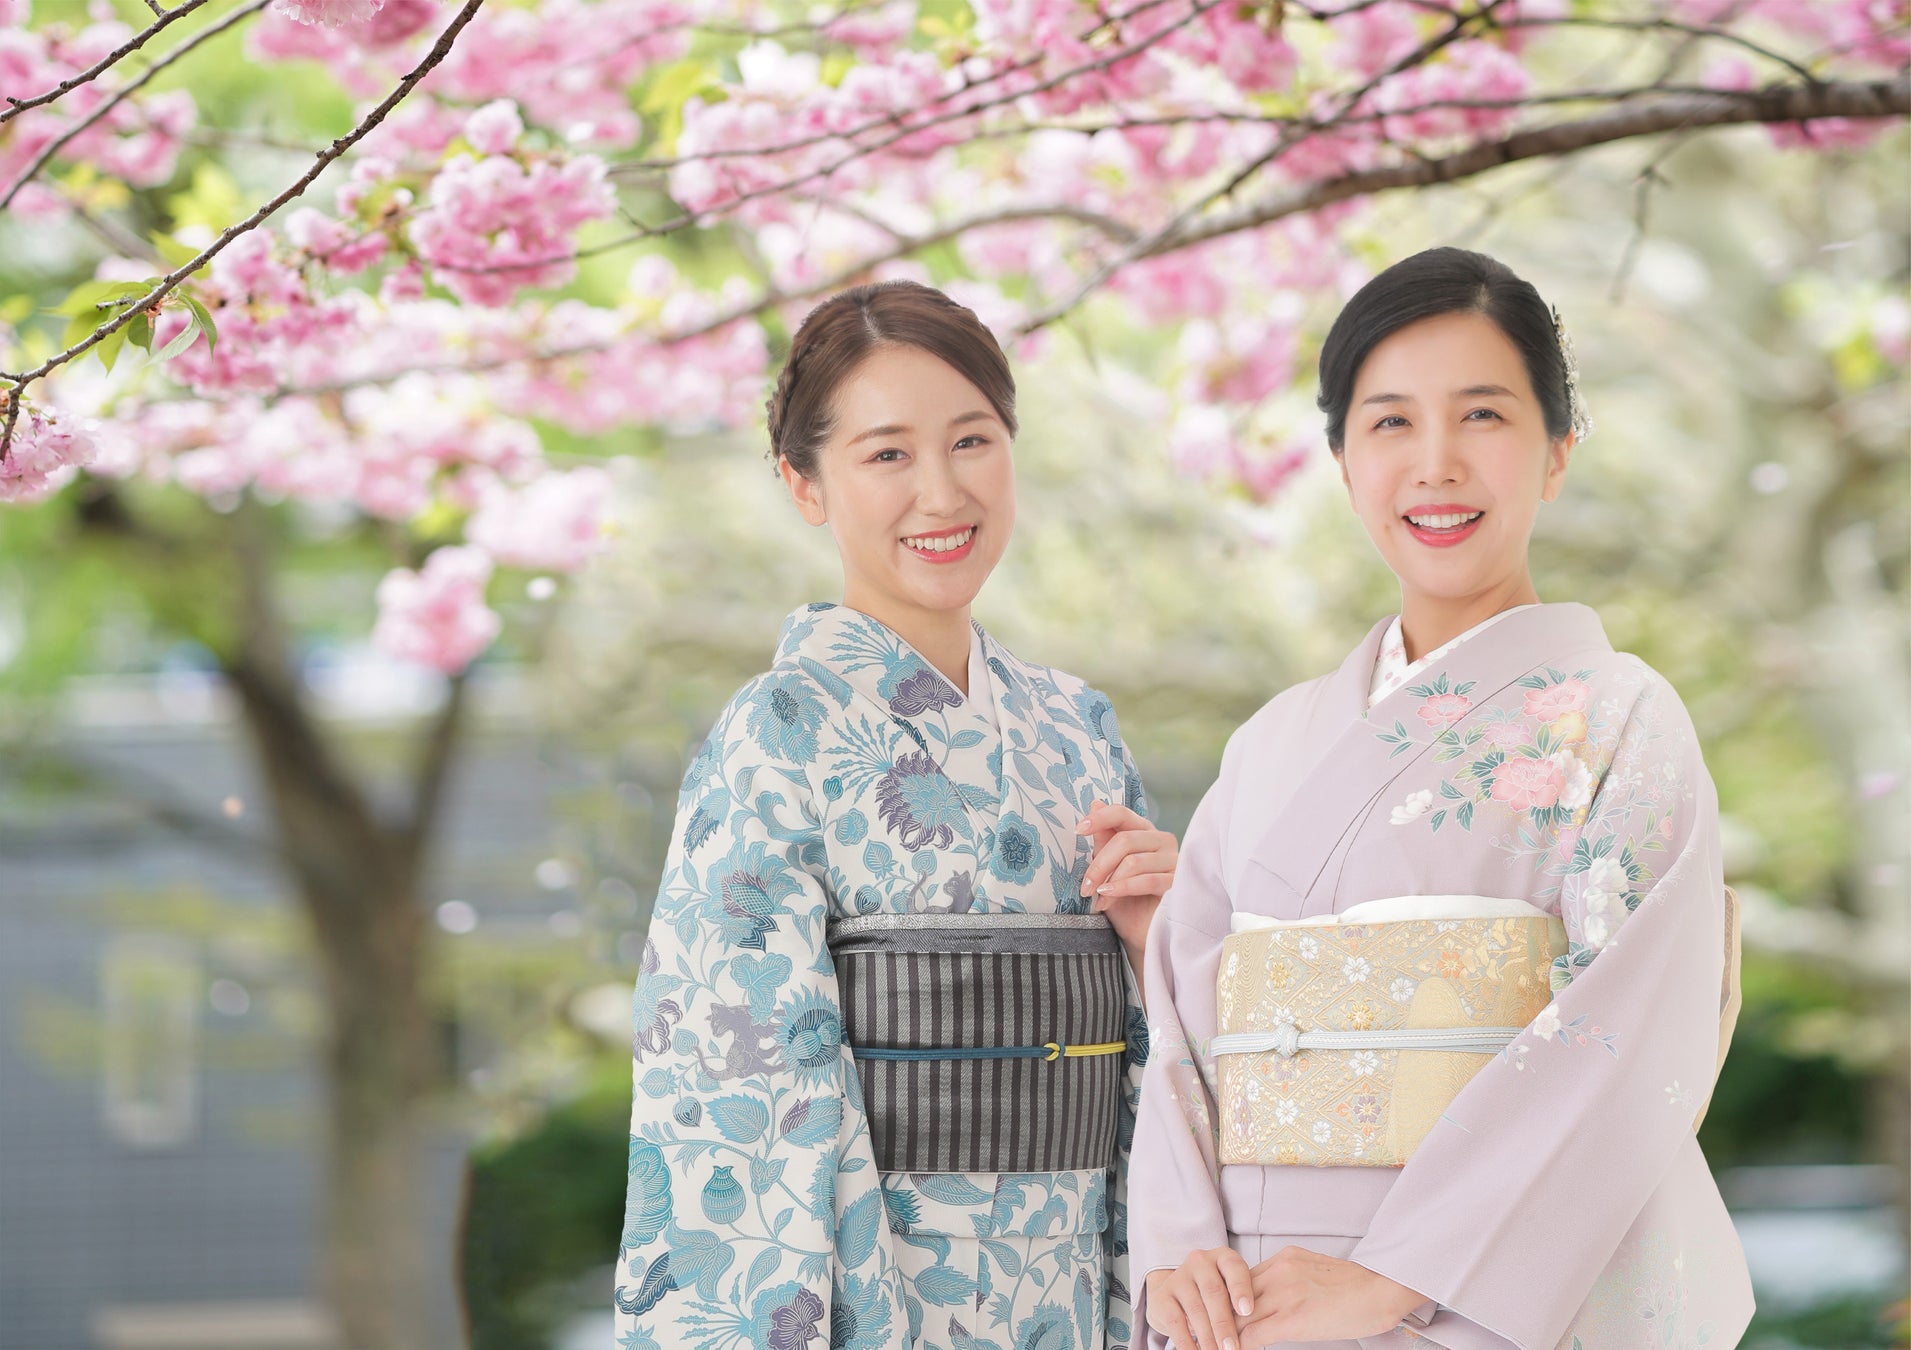 着物を着て楽しむ方が街中に溢れ、日本の美しい着物文化を未来へと継承していきたい。女性の美しさを披露するイベント「白桜祭」観覧に無料でご招待します！のサブ画像5